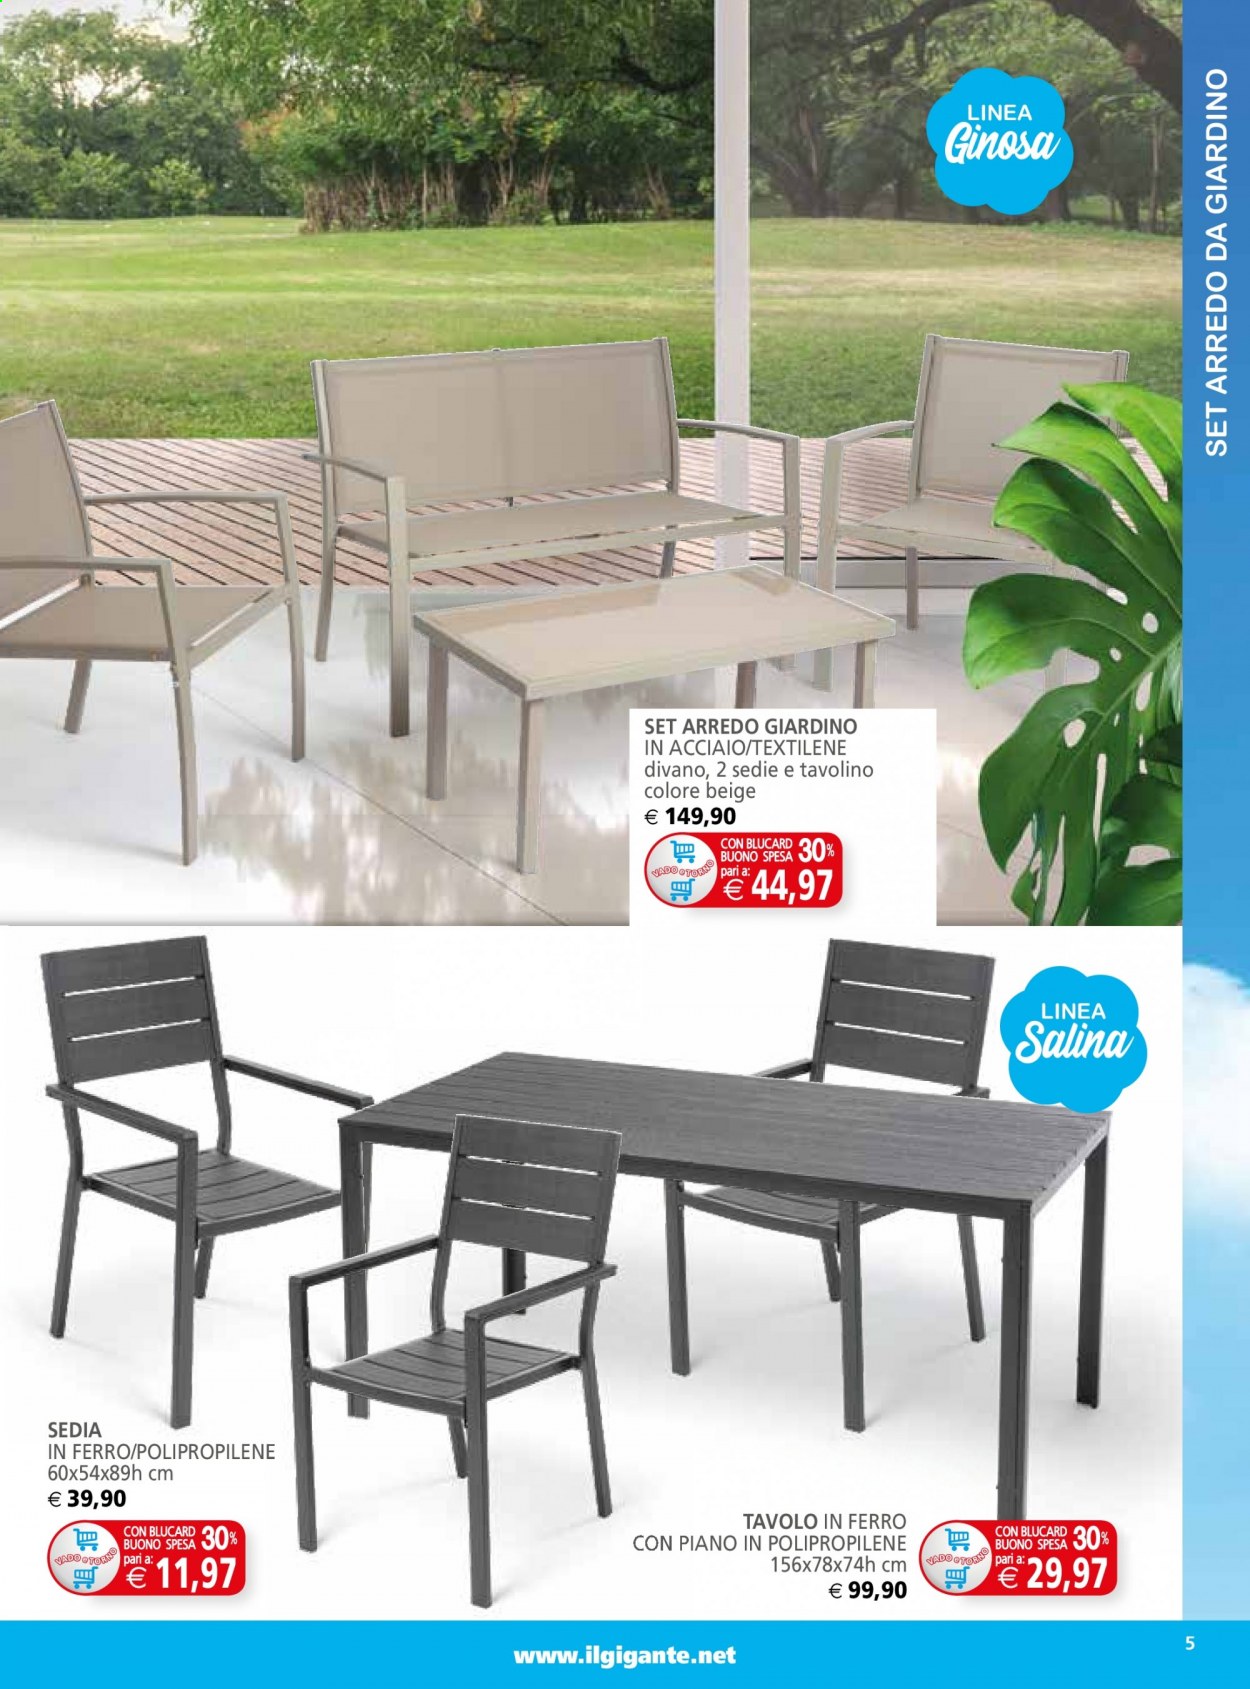 thumbnail - Volantino Il Gigante - 12/4/2021 - 9/5/2021 - Prodotti in offerta - set di mobili da giardino, tavolo, divano, sedia. Pagina 5.